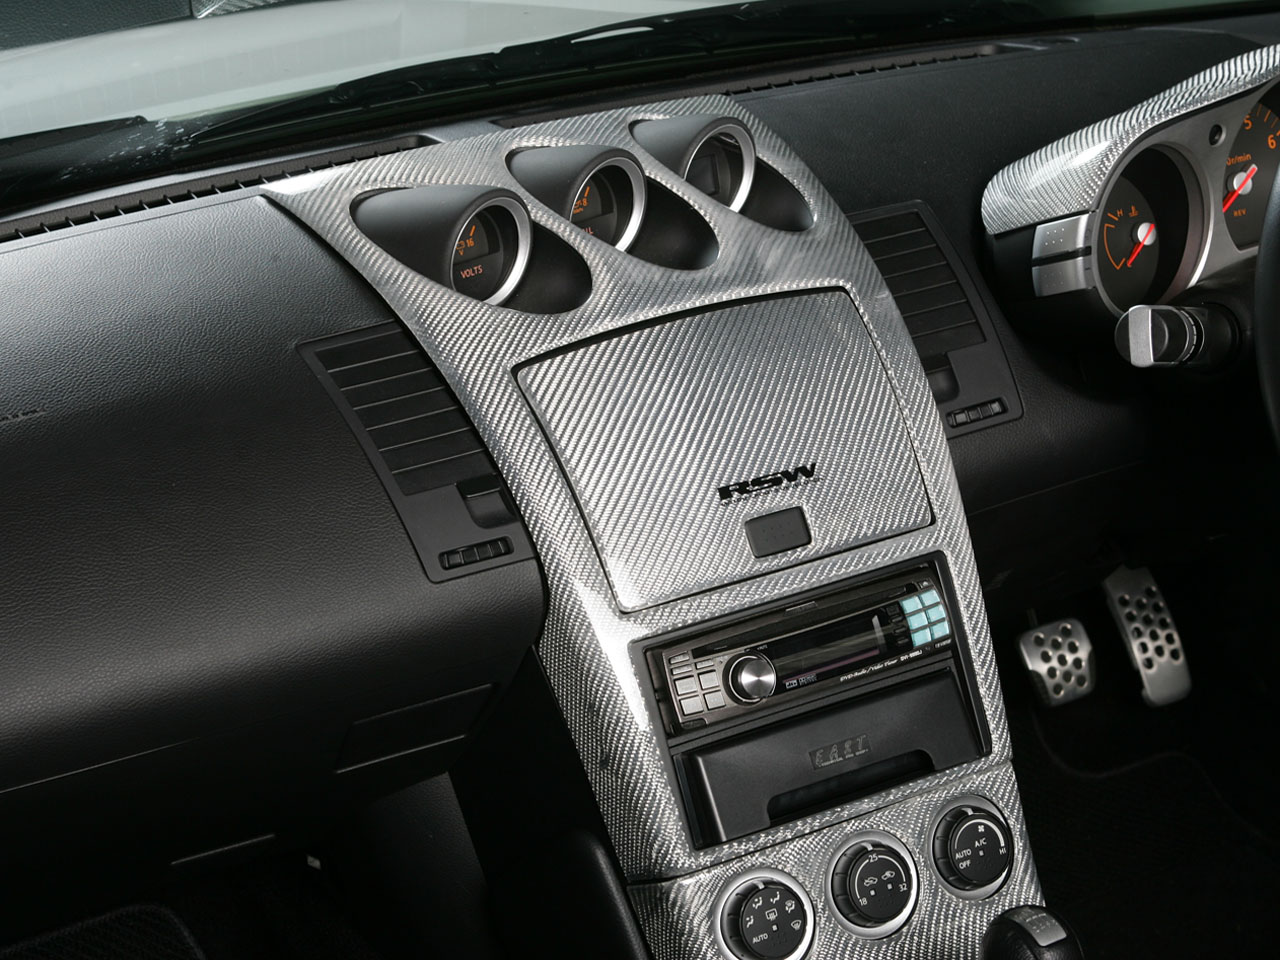 フェアレディZ Z33 RSW ミッション インストルメントパネルセット 2006- シルバーカーボン製 後期専用